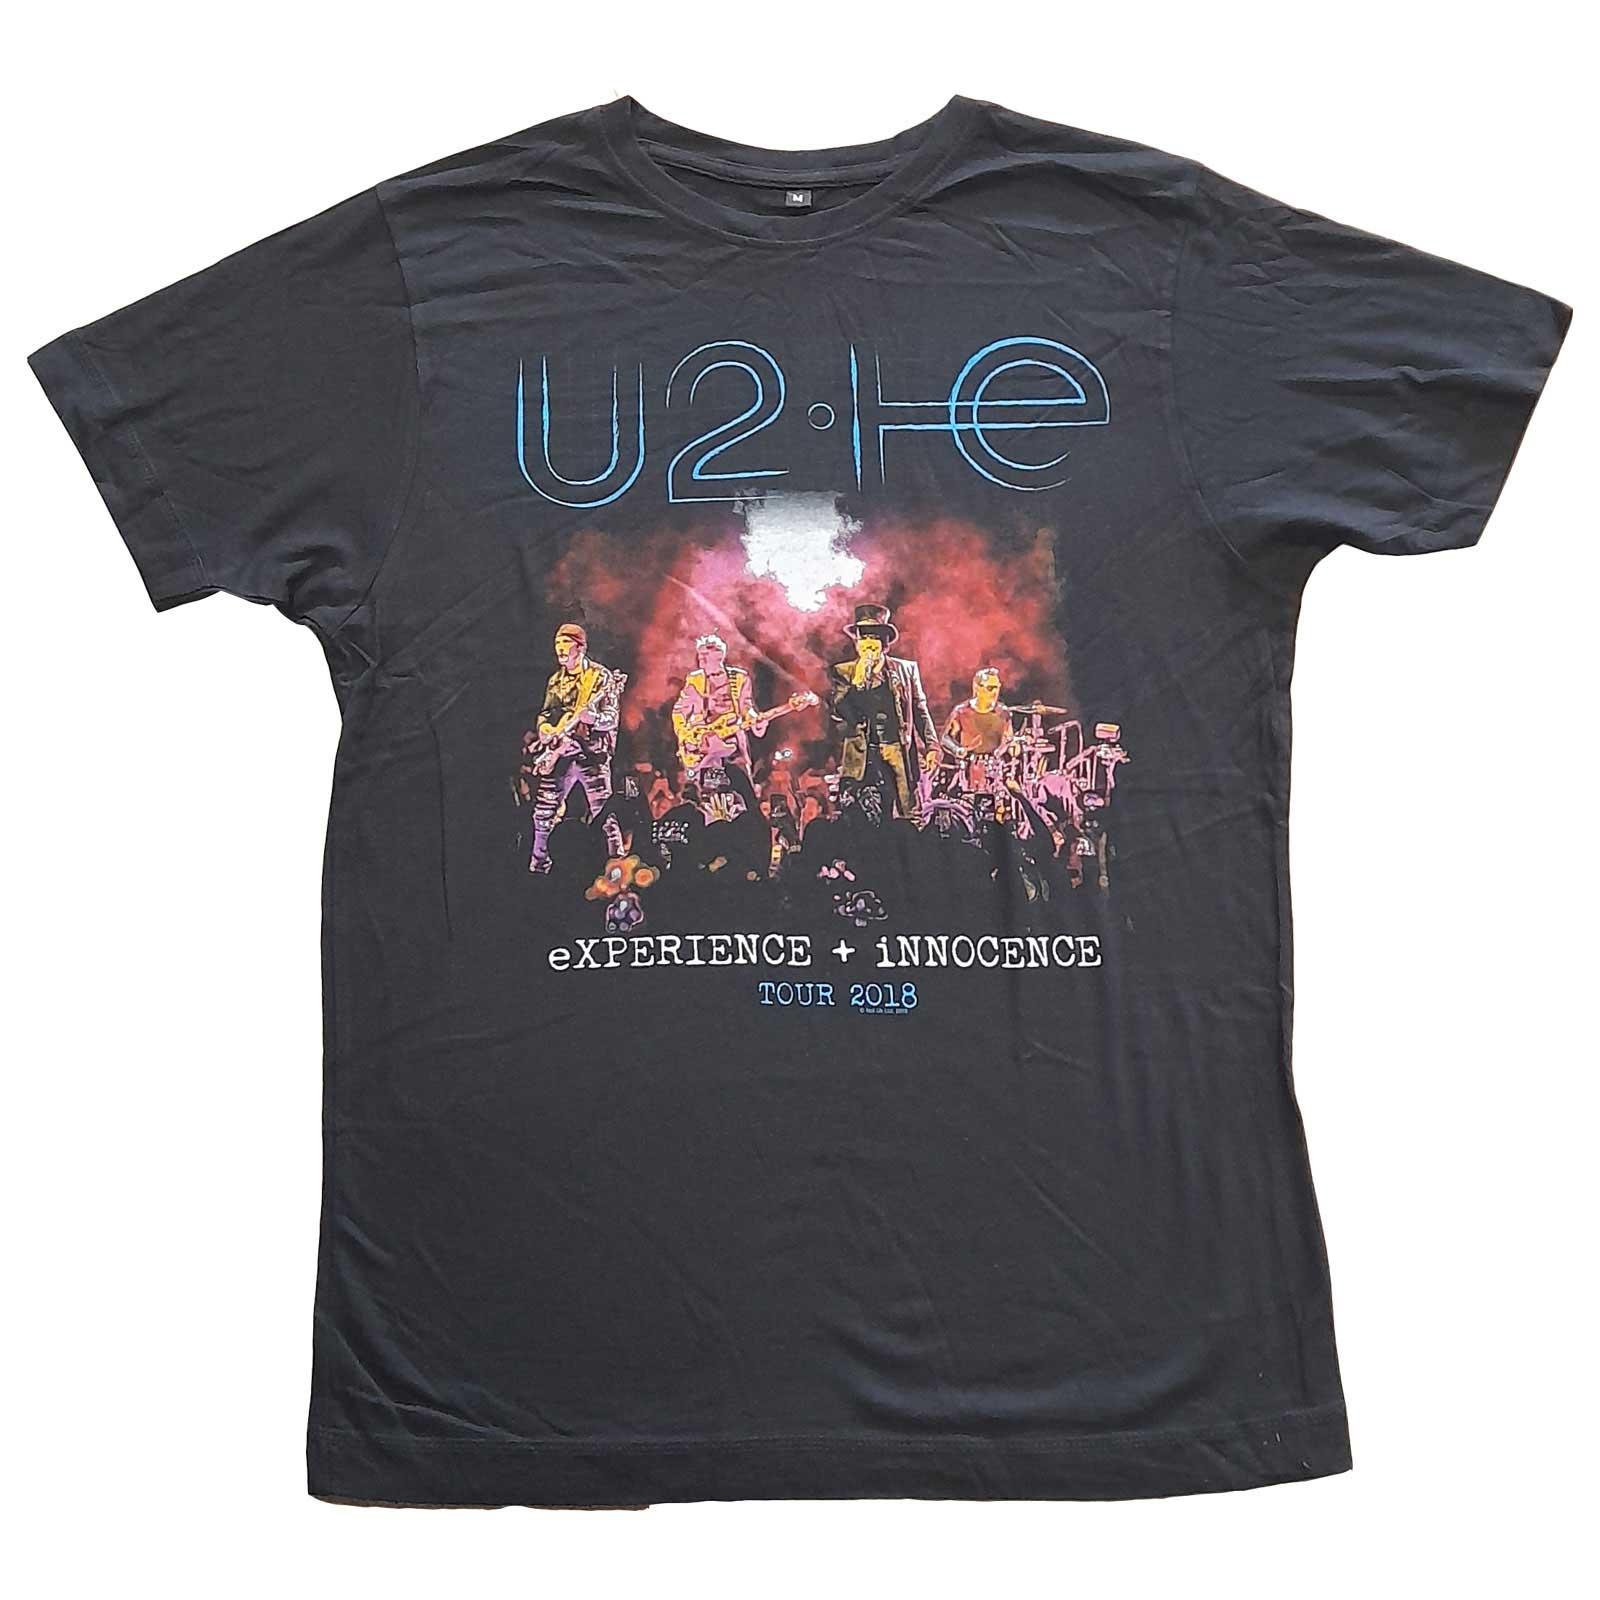 (ユートゥー) U2 オフィシャル商品 ユニセックス Live Photo 2018 Tシャツ コットン 半袖 トップス 【海外通販】